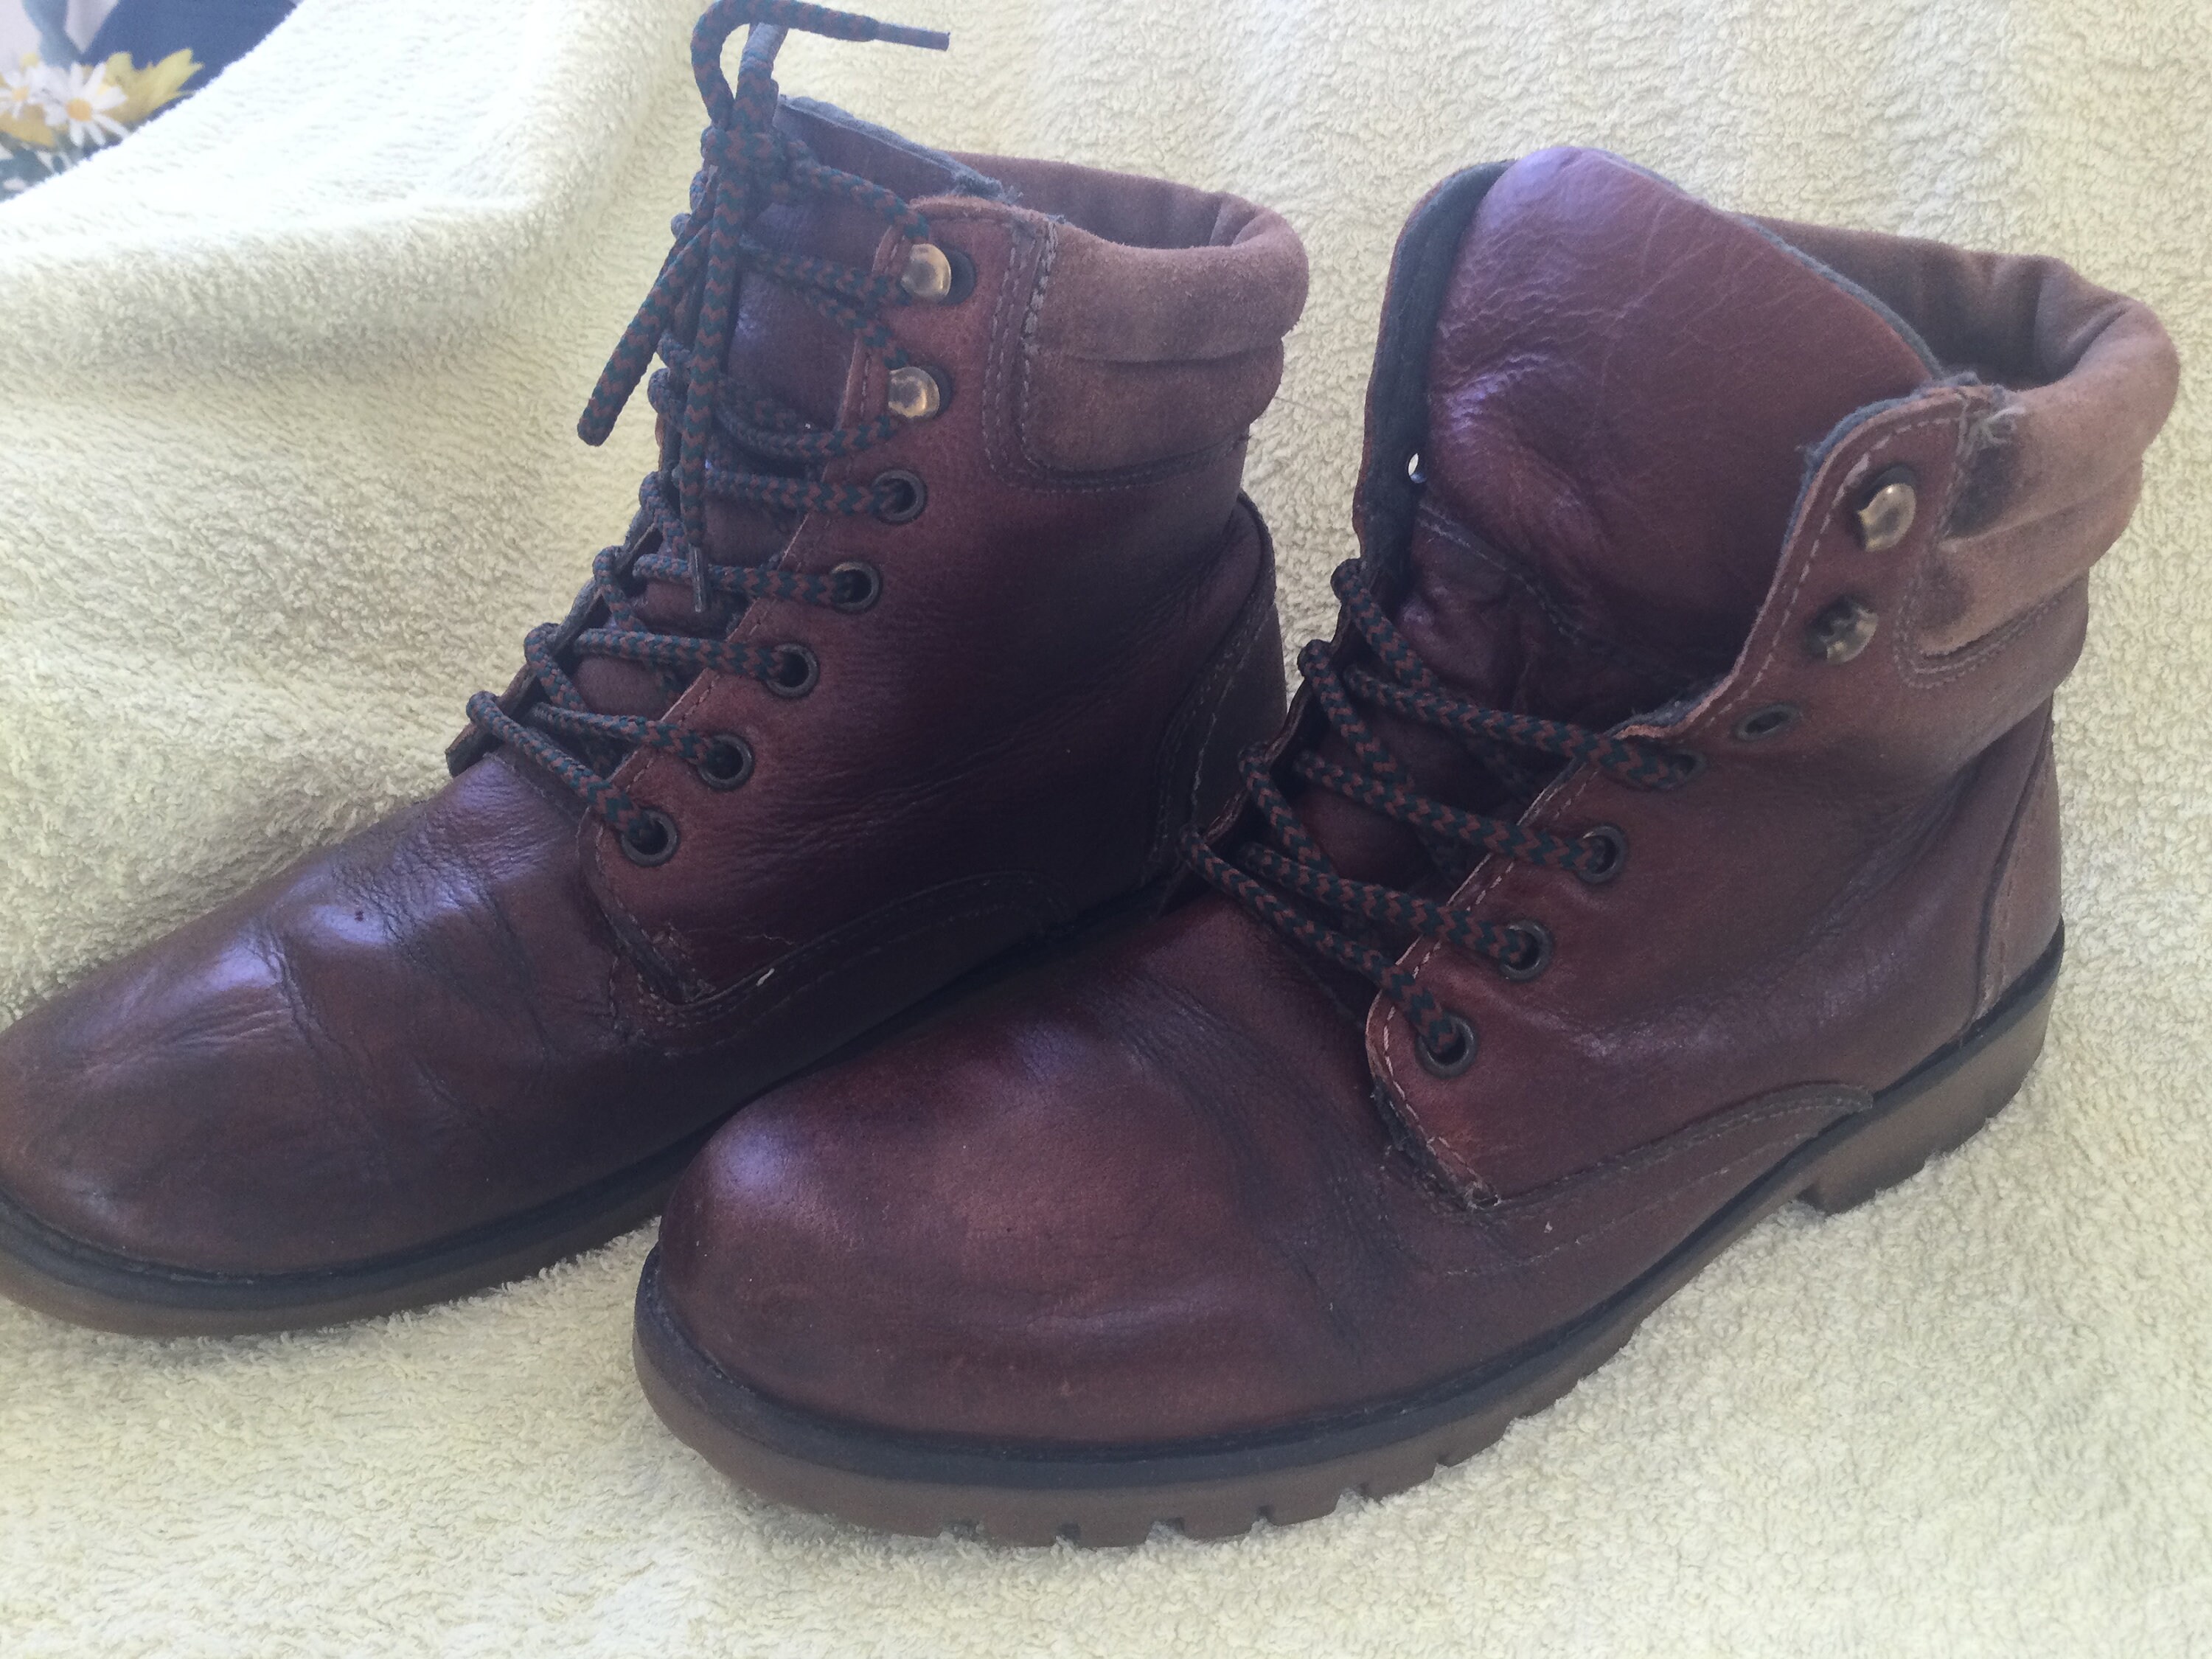 Nut brown battered vintage boots US 8 or UK 6 hiking walking | Etsy